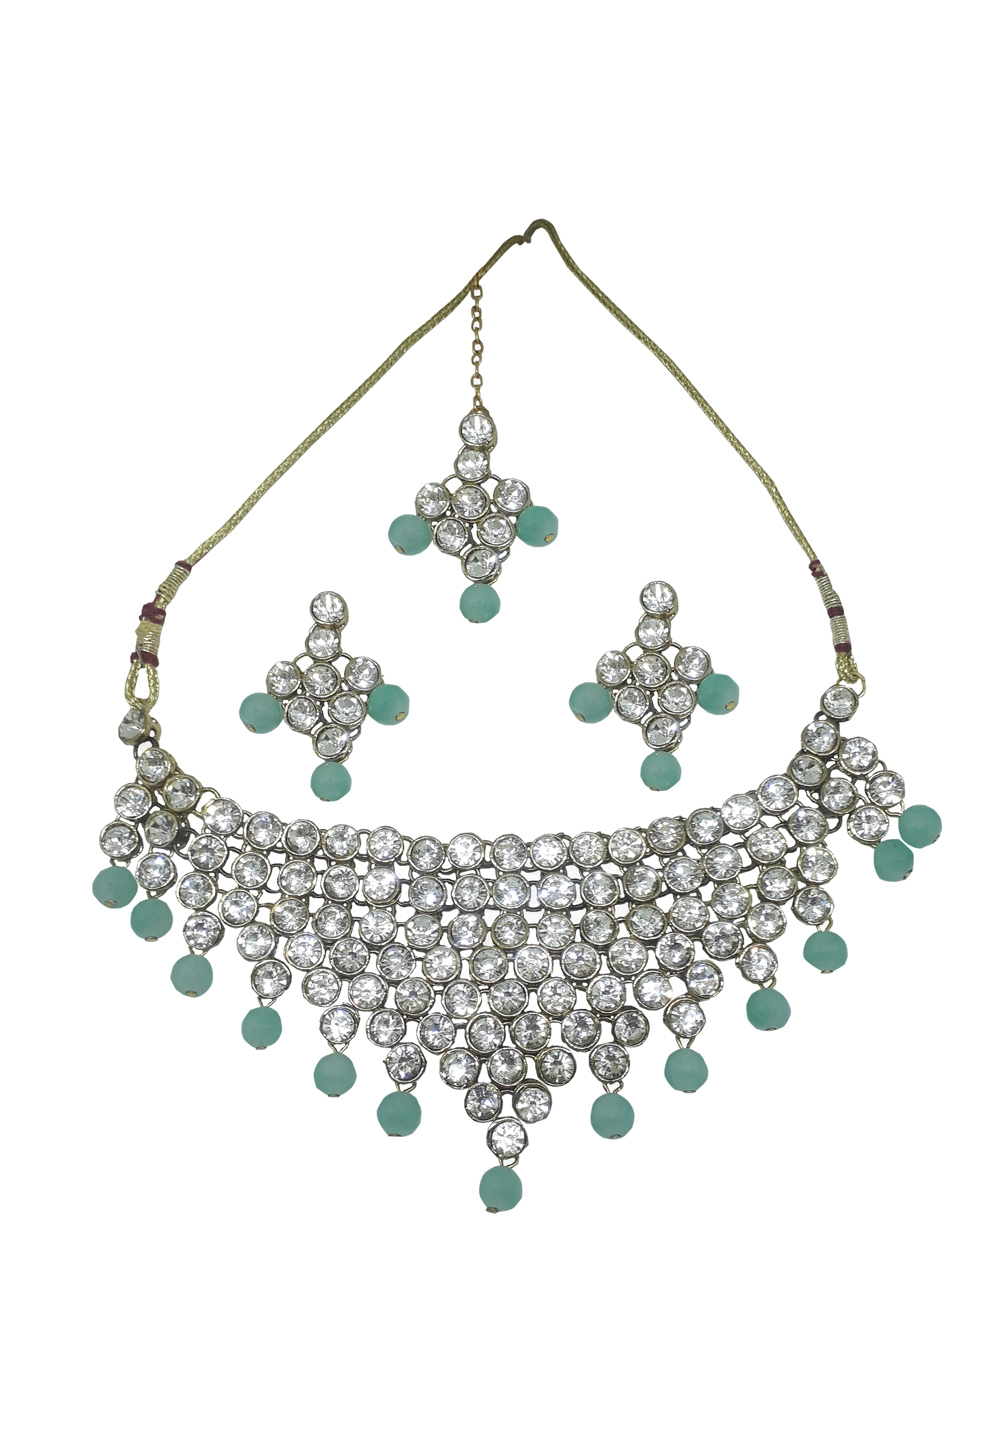 Antique sea green agates beads designer necklace set dj-35556 – dreamjwell